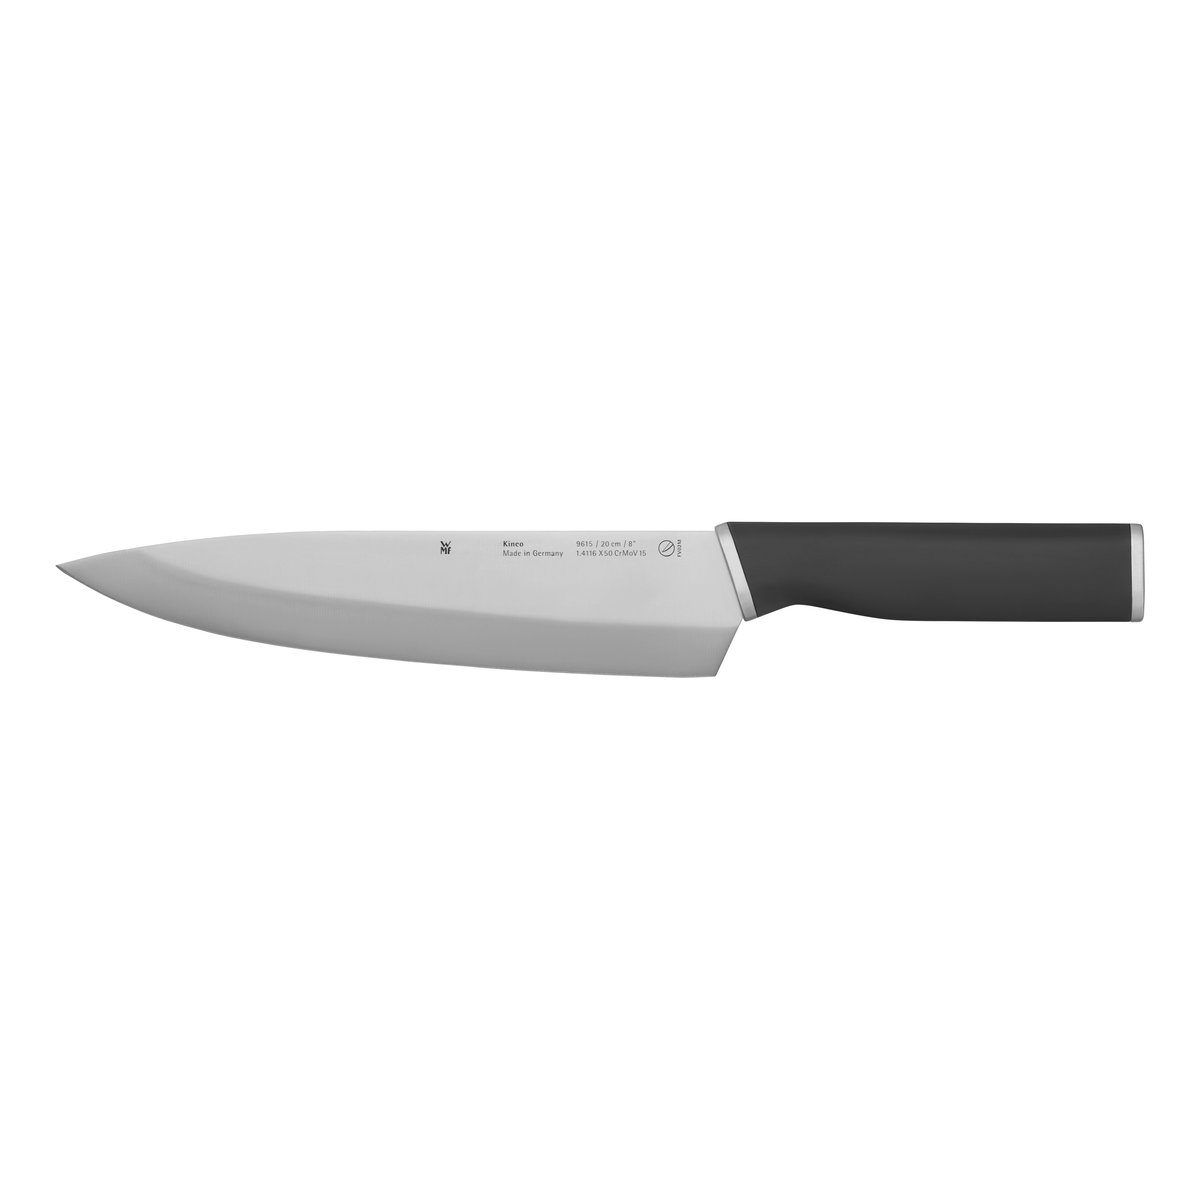 wmf couteau de cuisine kineo cromargan 20 cm